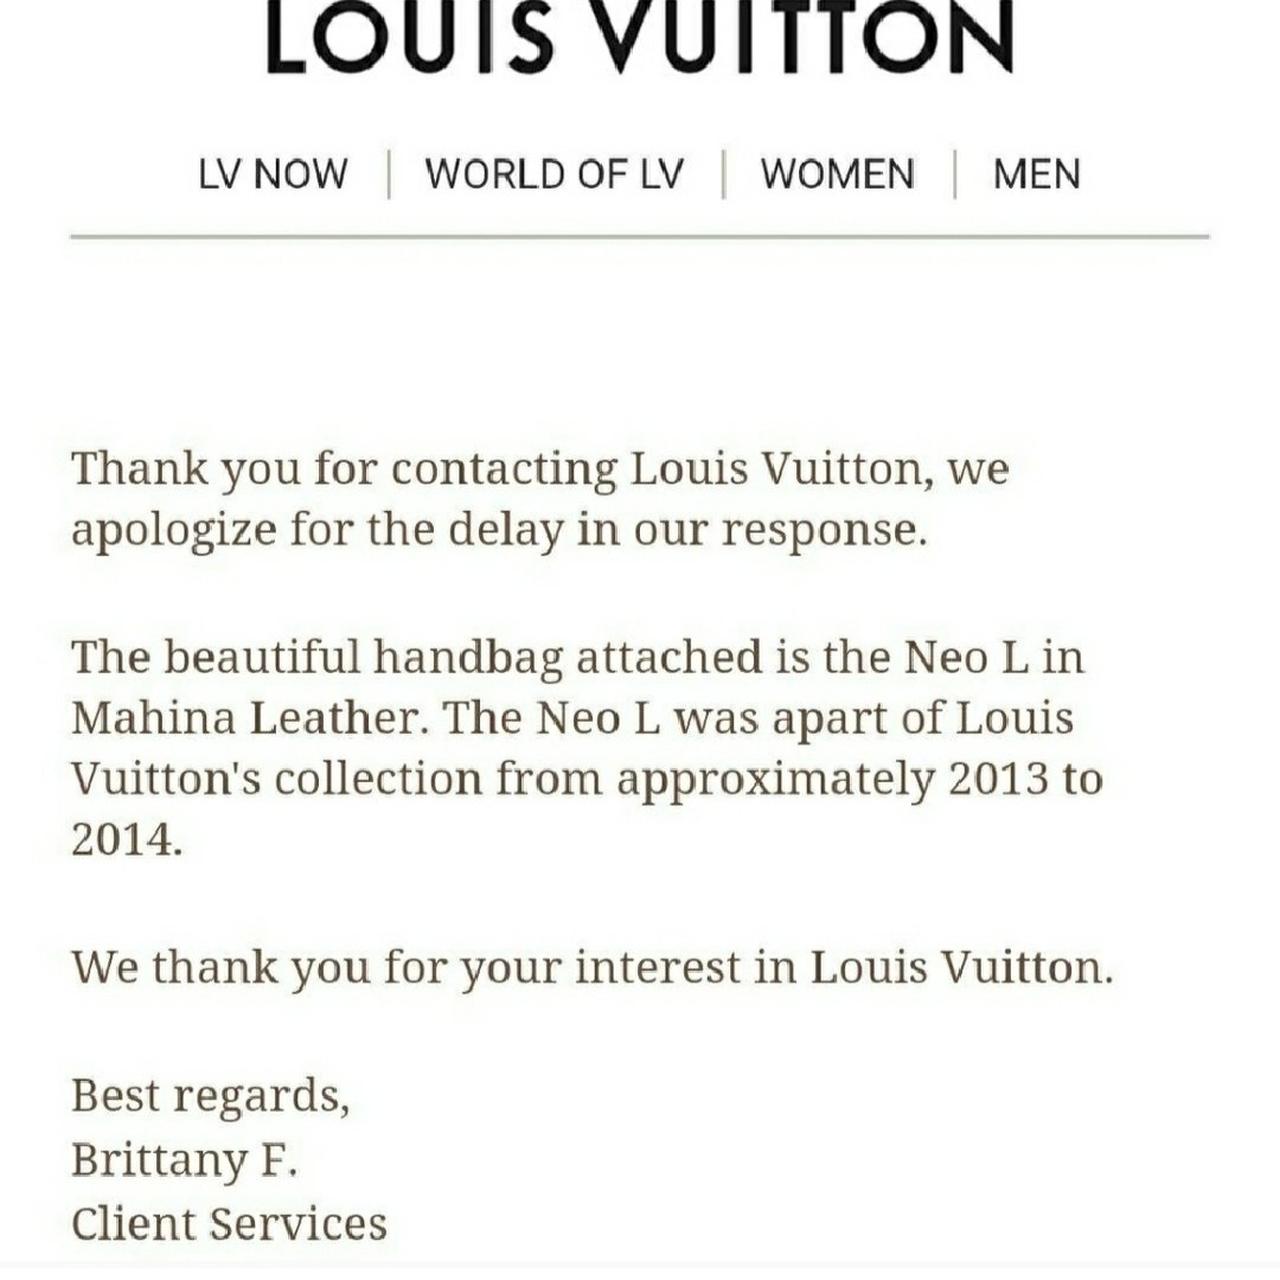 Louis Vuitton F/S 2014